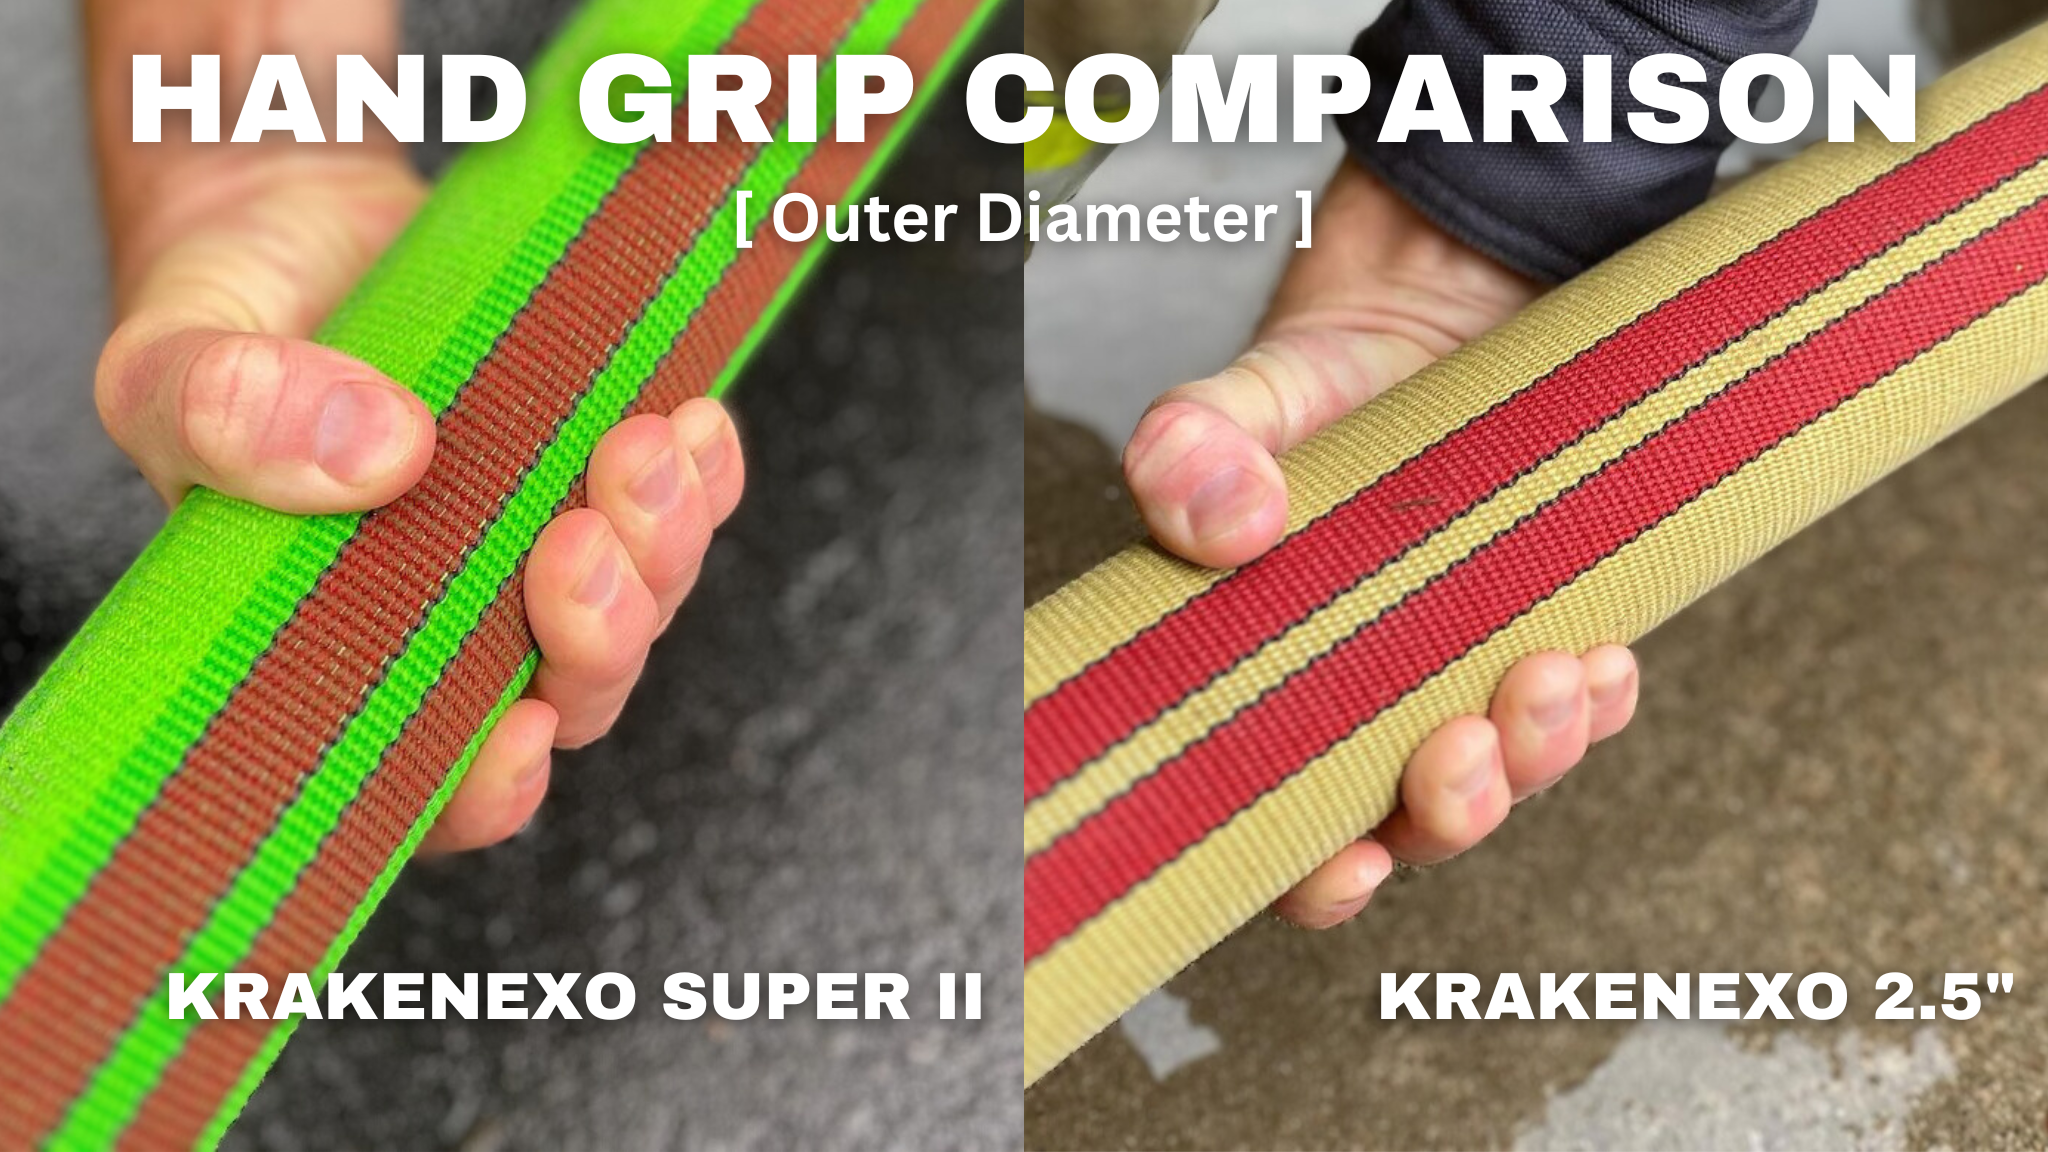 Hand Grip Comparisons of KrakenEXO SUPER II vs KrakenEXO 2.5